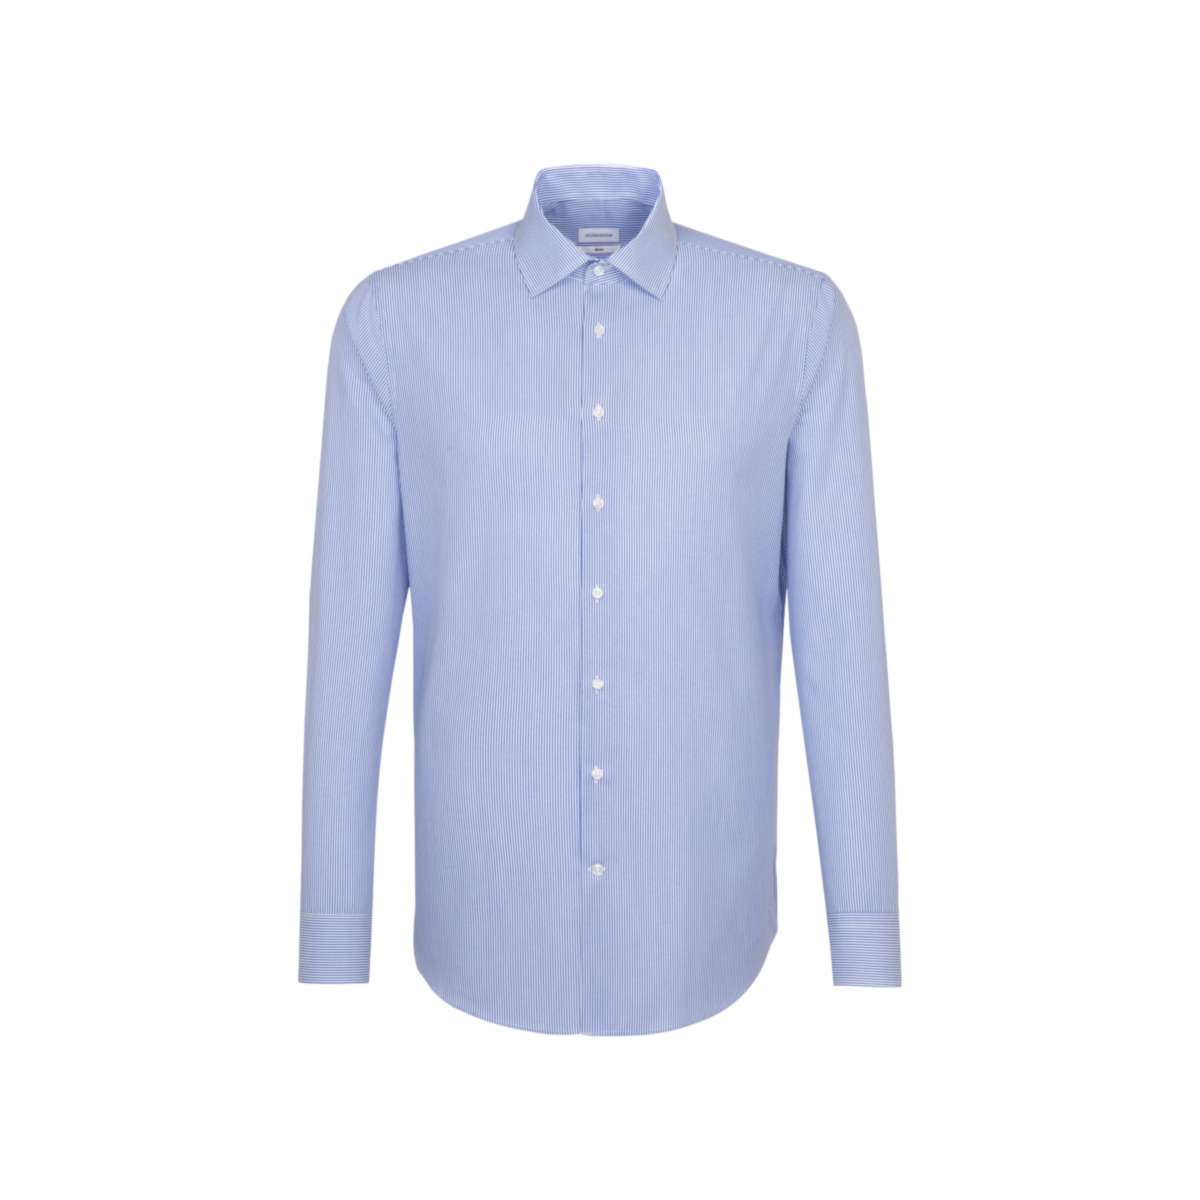 Seidensticker Men´s Shirt Slim Fit Check/Stripes Long Sleeve Check Light Blue - White 36 (SN693600)